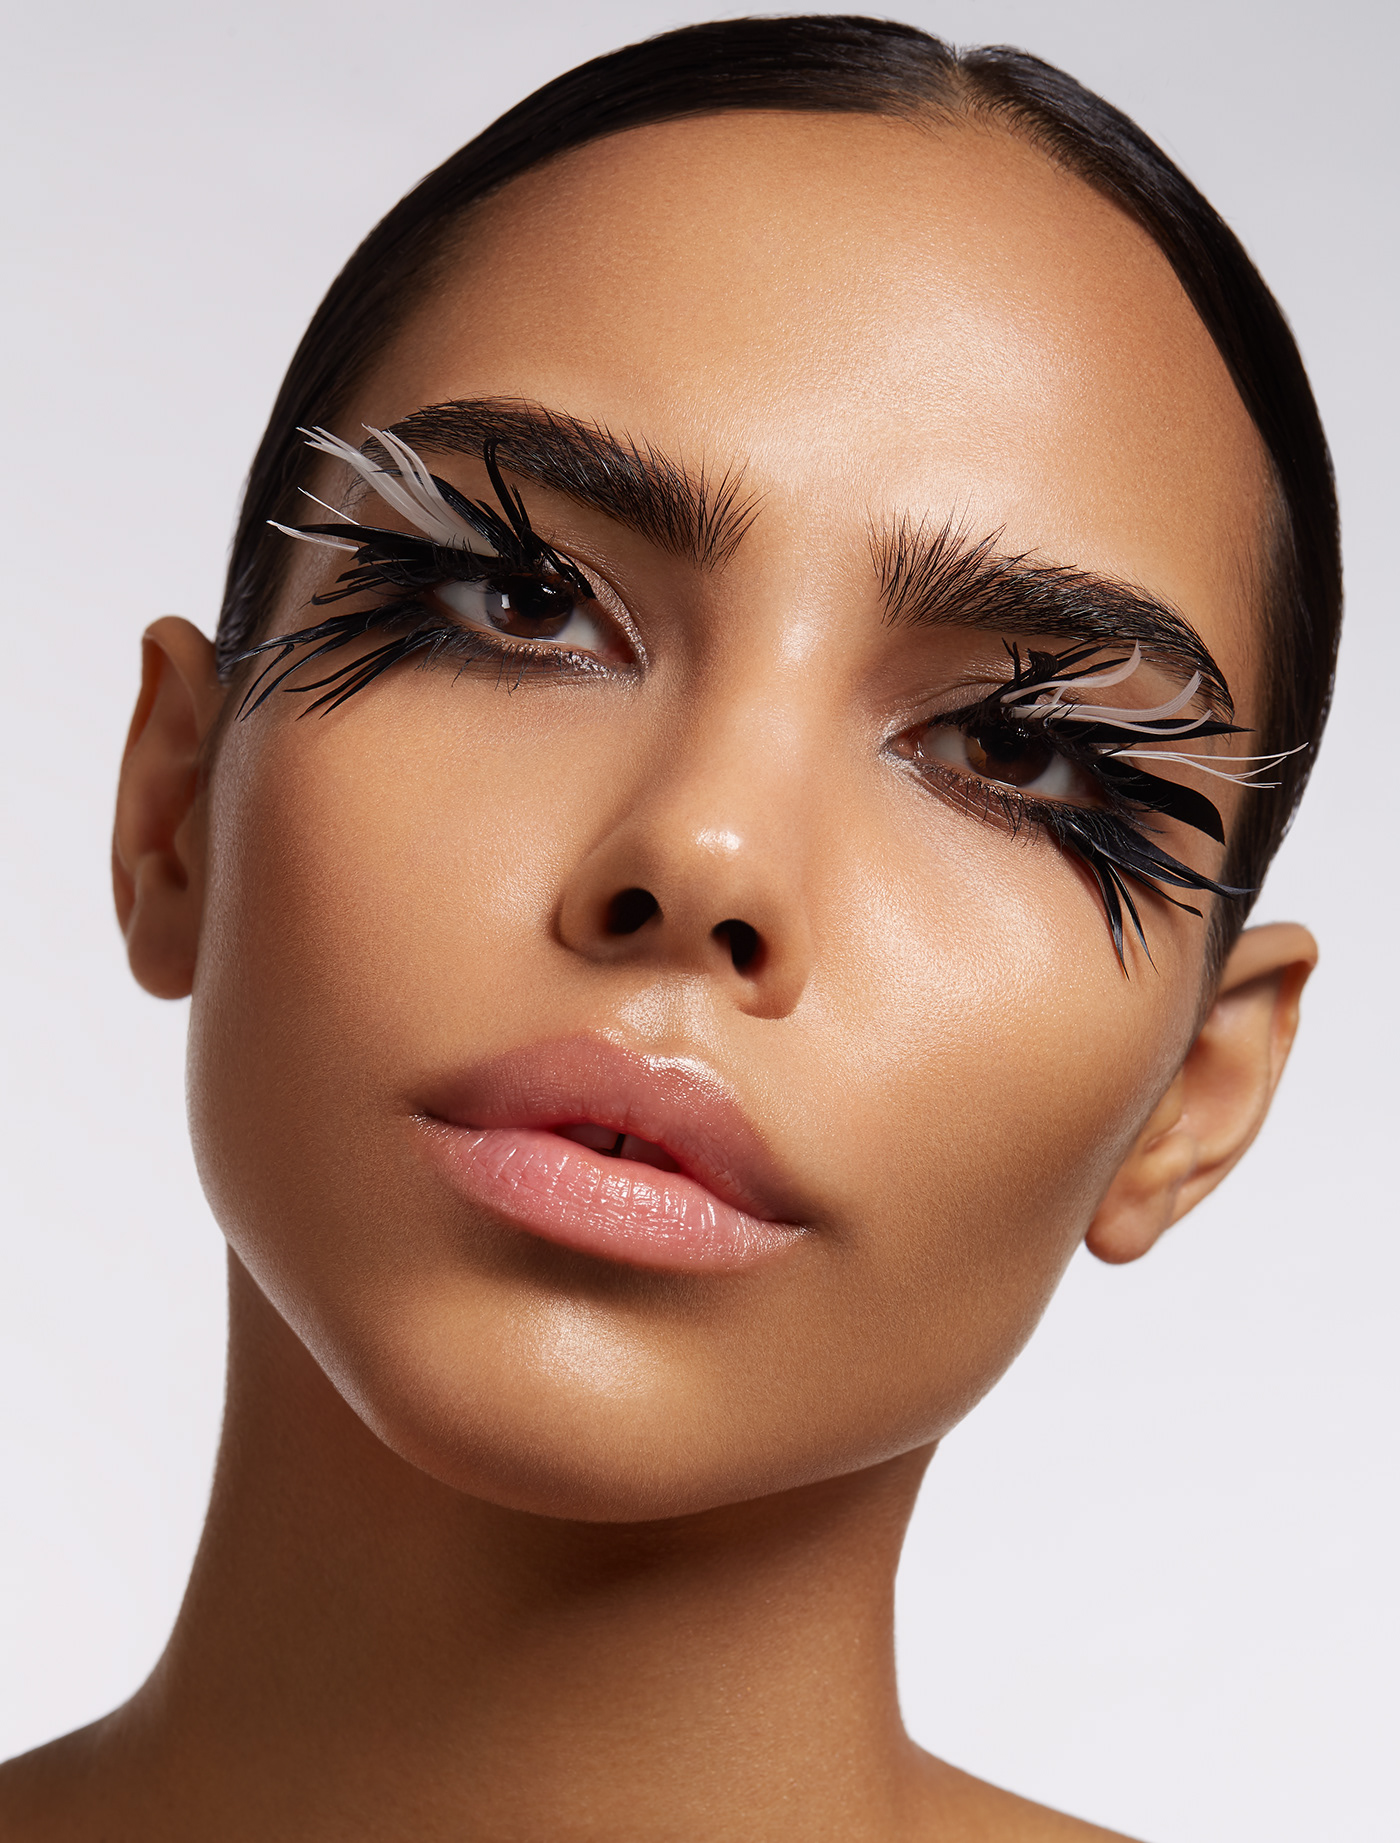 skin skincare skin care eye eyes Eyelashes lashes beauty editorial